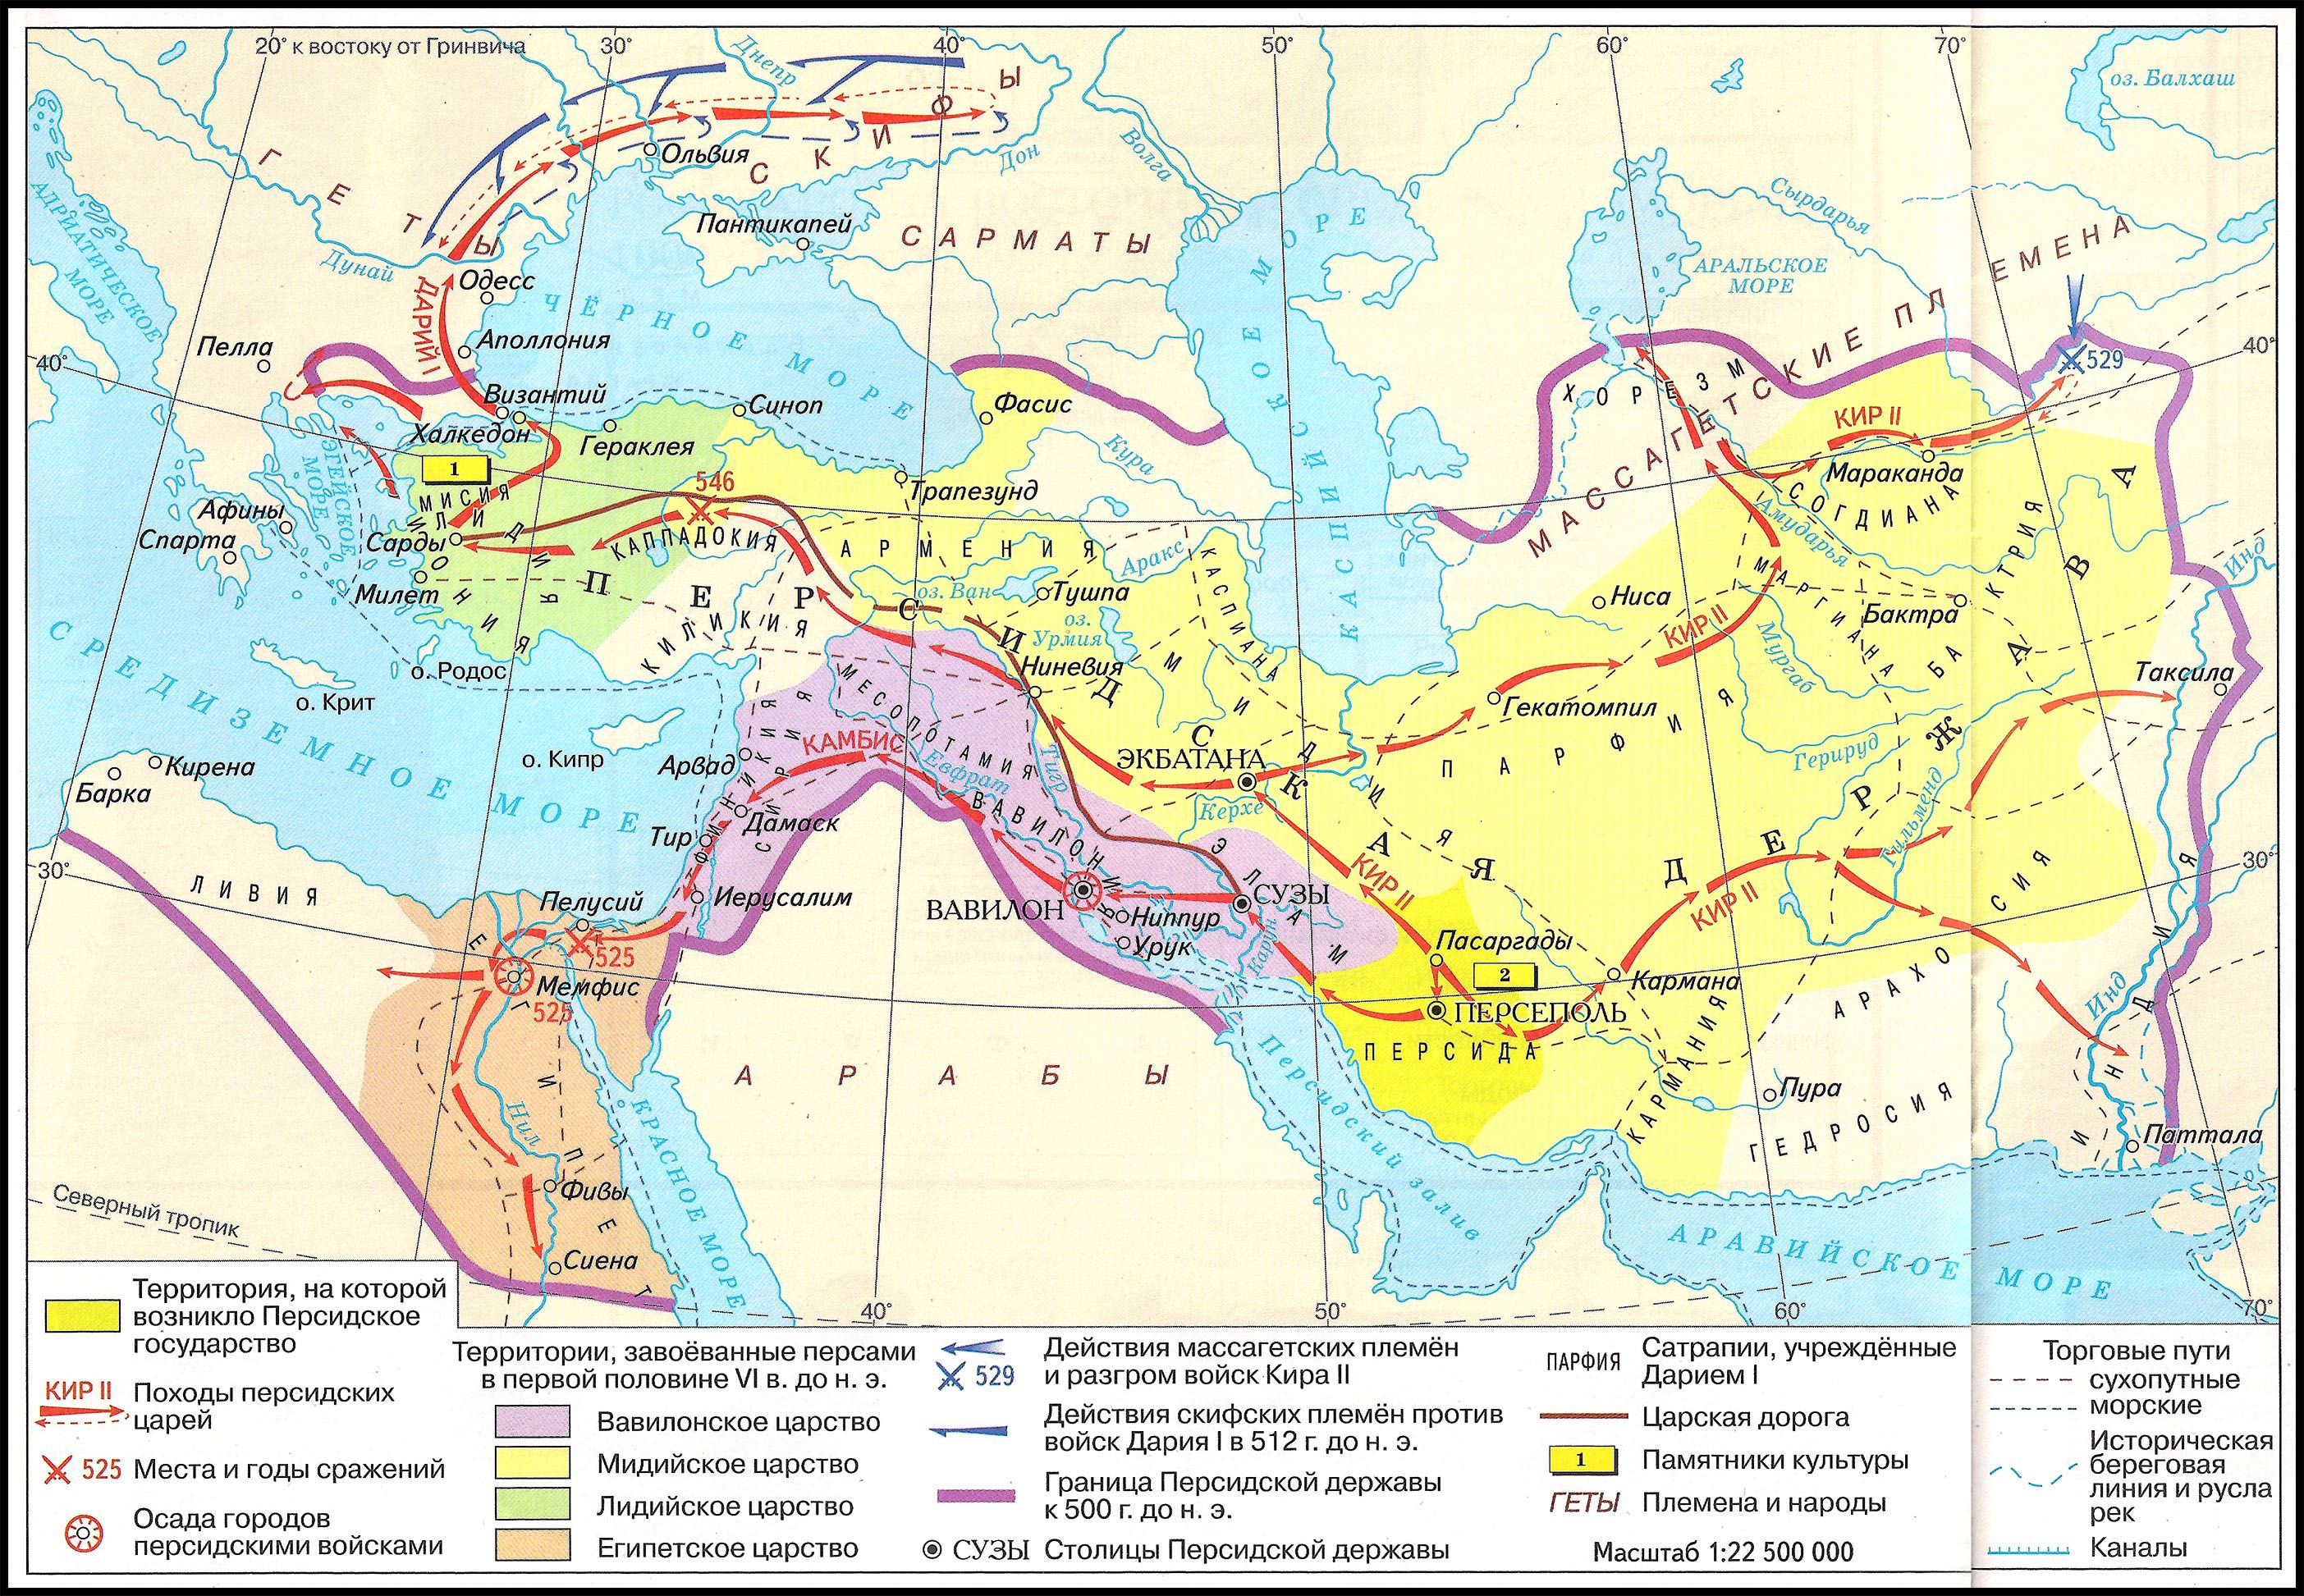 Царская дорога относится к персии. Персидская держава 550-330 гг до н э.